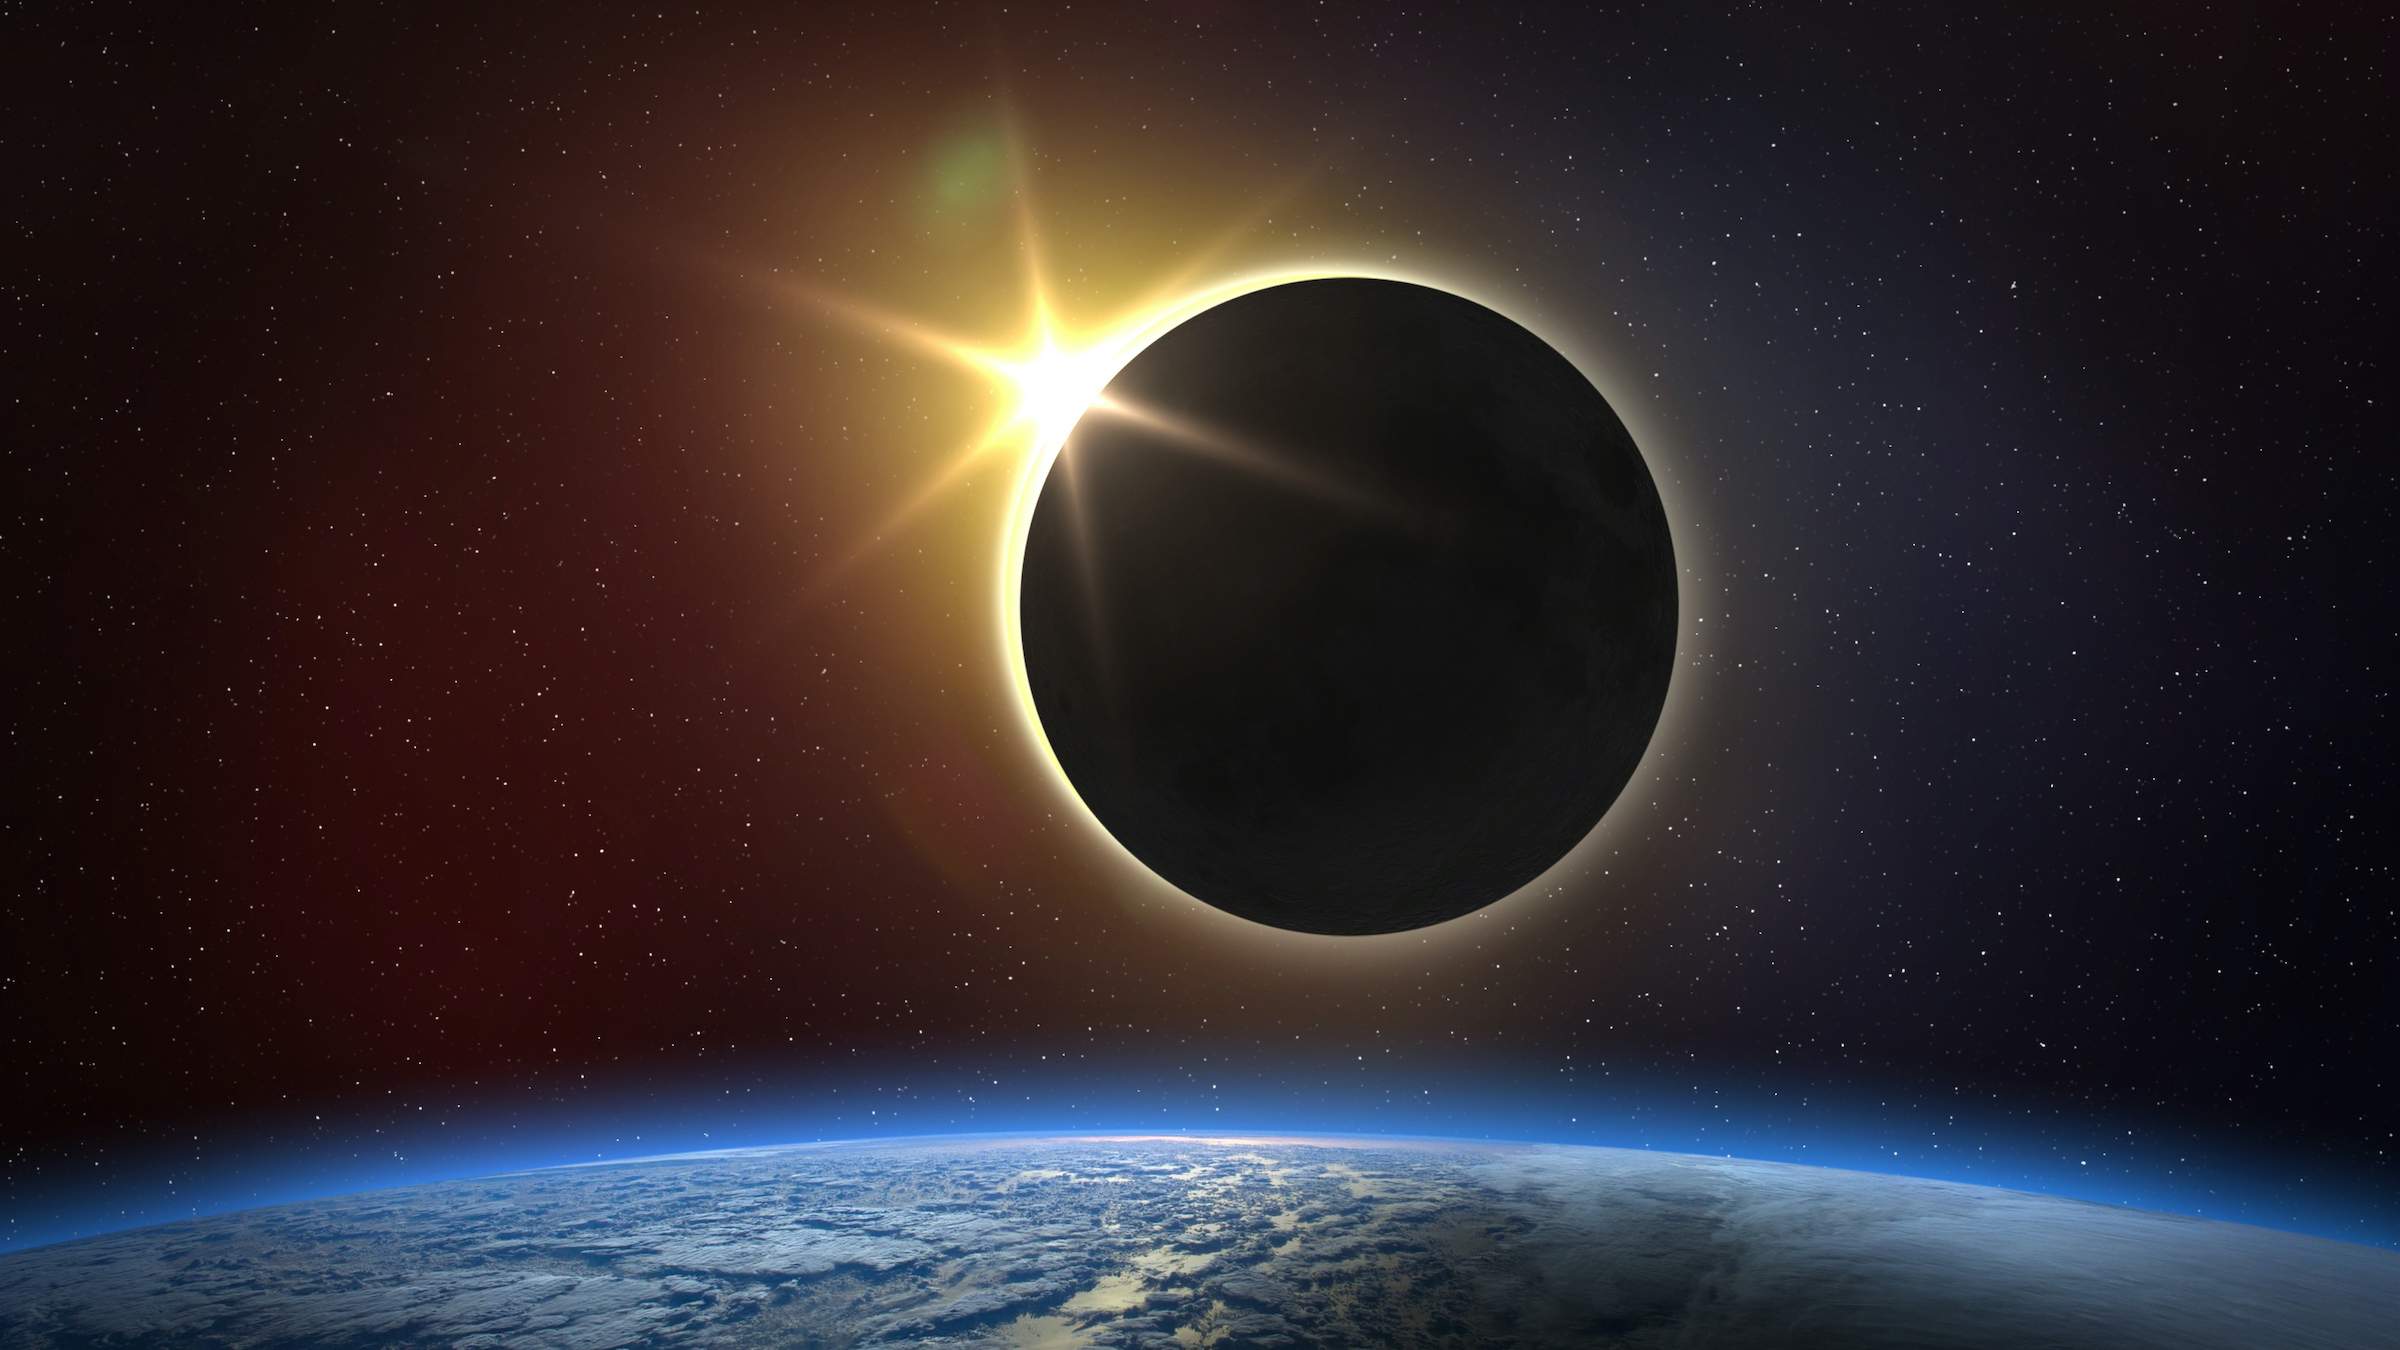 El 8 de abril de 2024, la luna bloqueará por completo al sol durante unos minutos en un eclipse solar total que pasará sobre América del Norte.